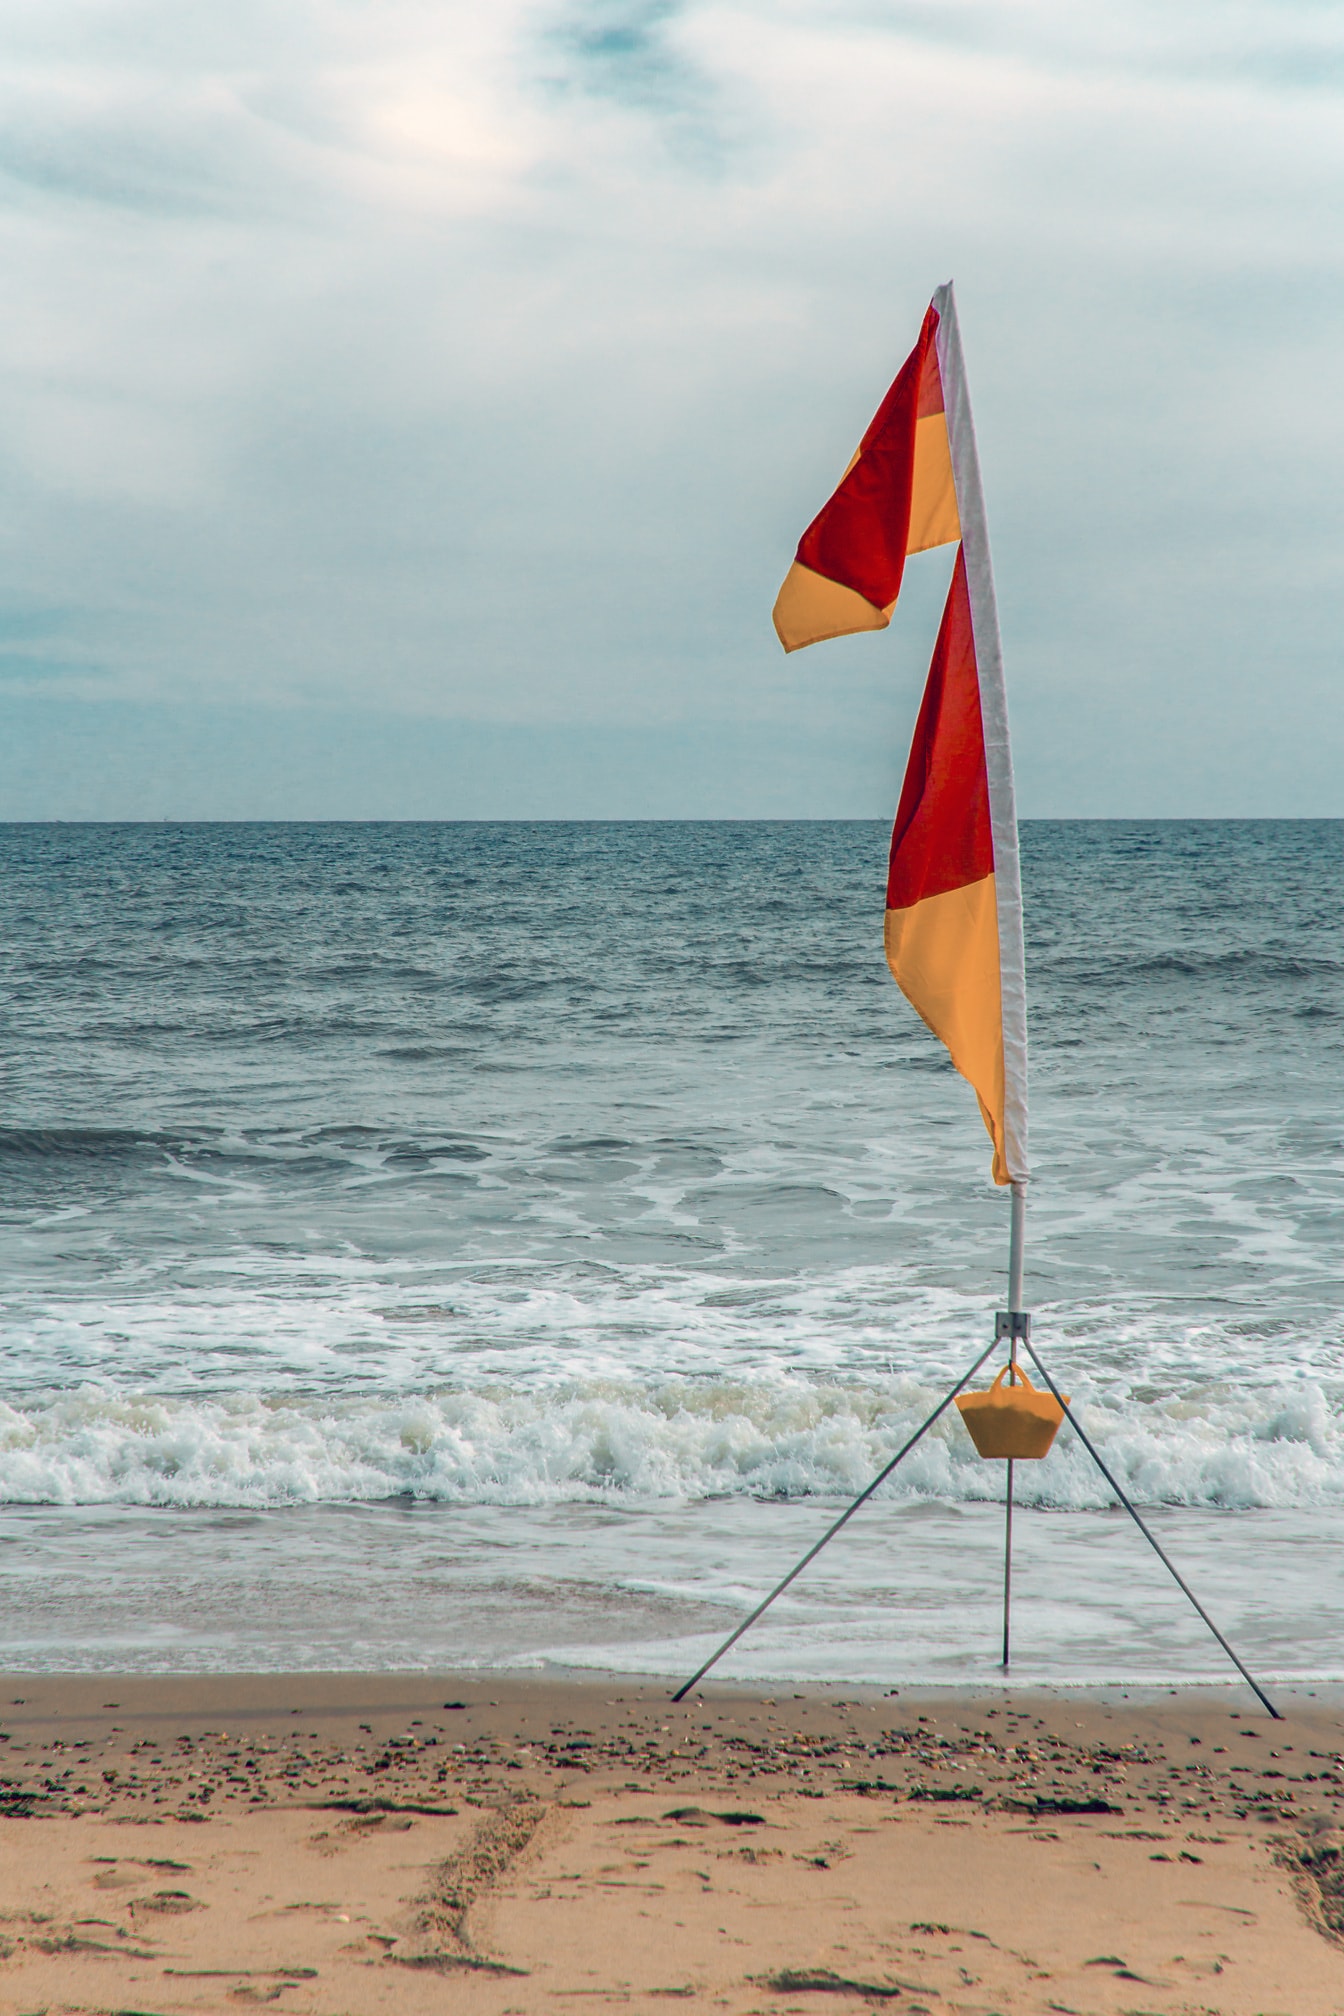 Điểm đánh dấu lướt sóng cờ vải màu vàng cam trên cây gậy trên bãi biển